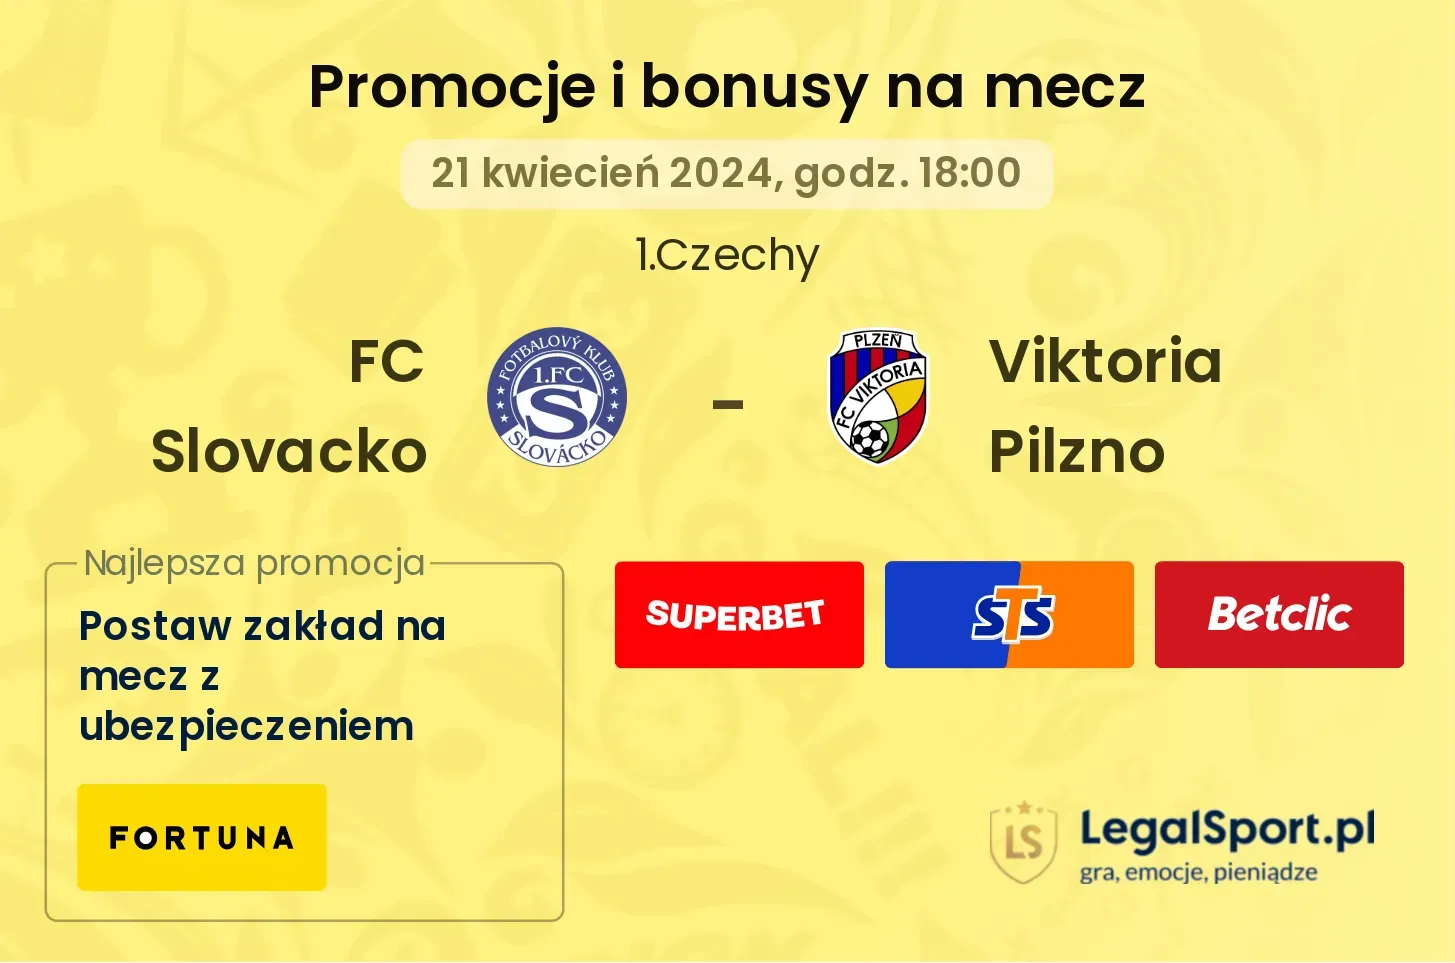 FC Slovacko - Viktoria Pilzno promocje bonusy na mecz